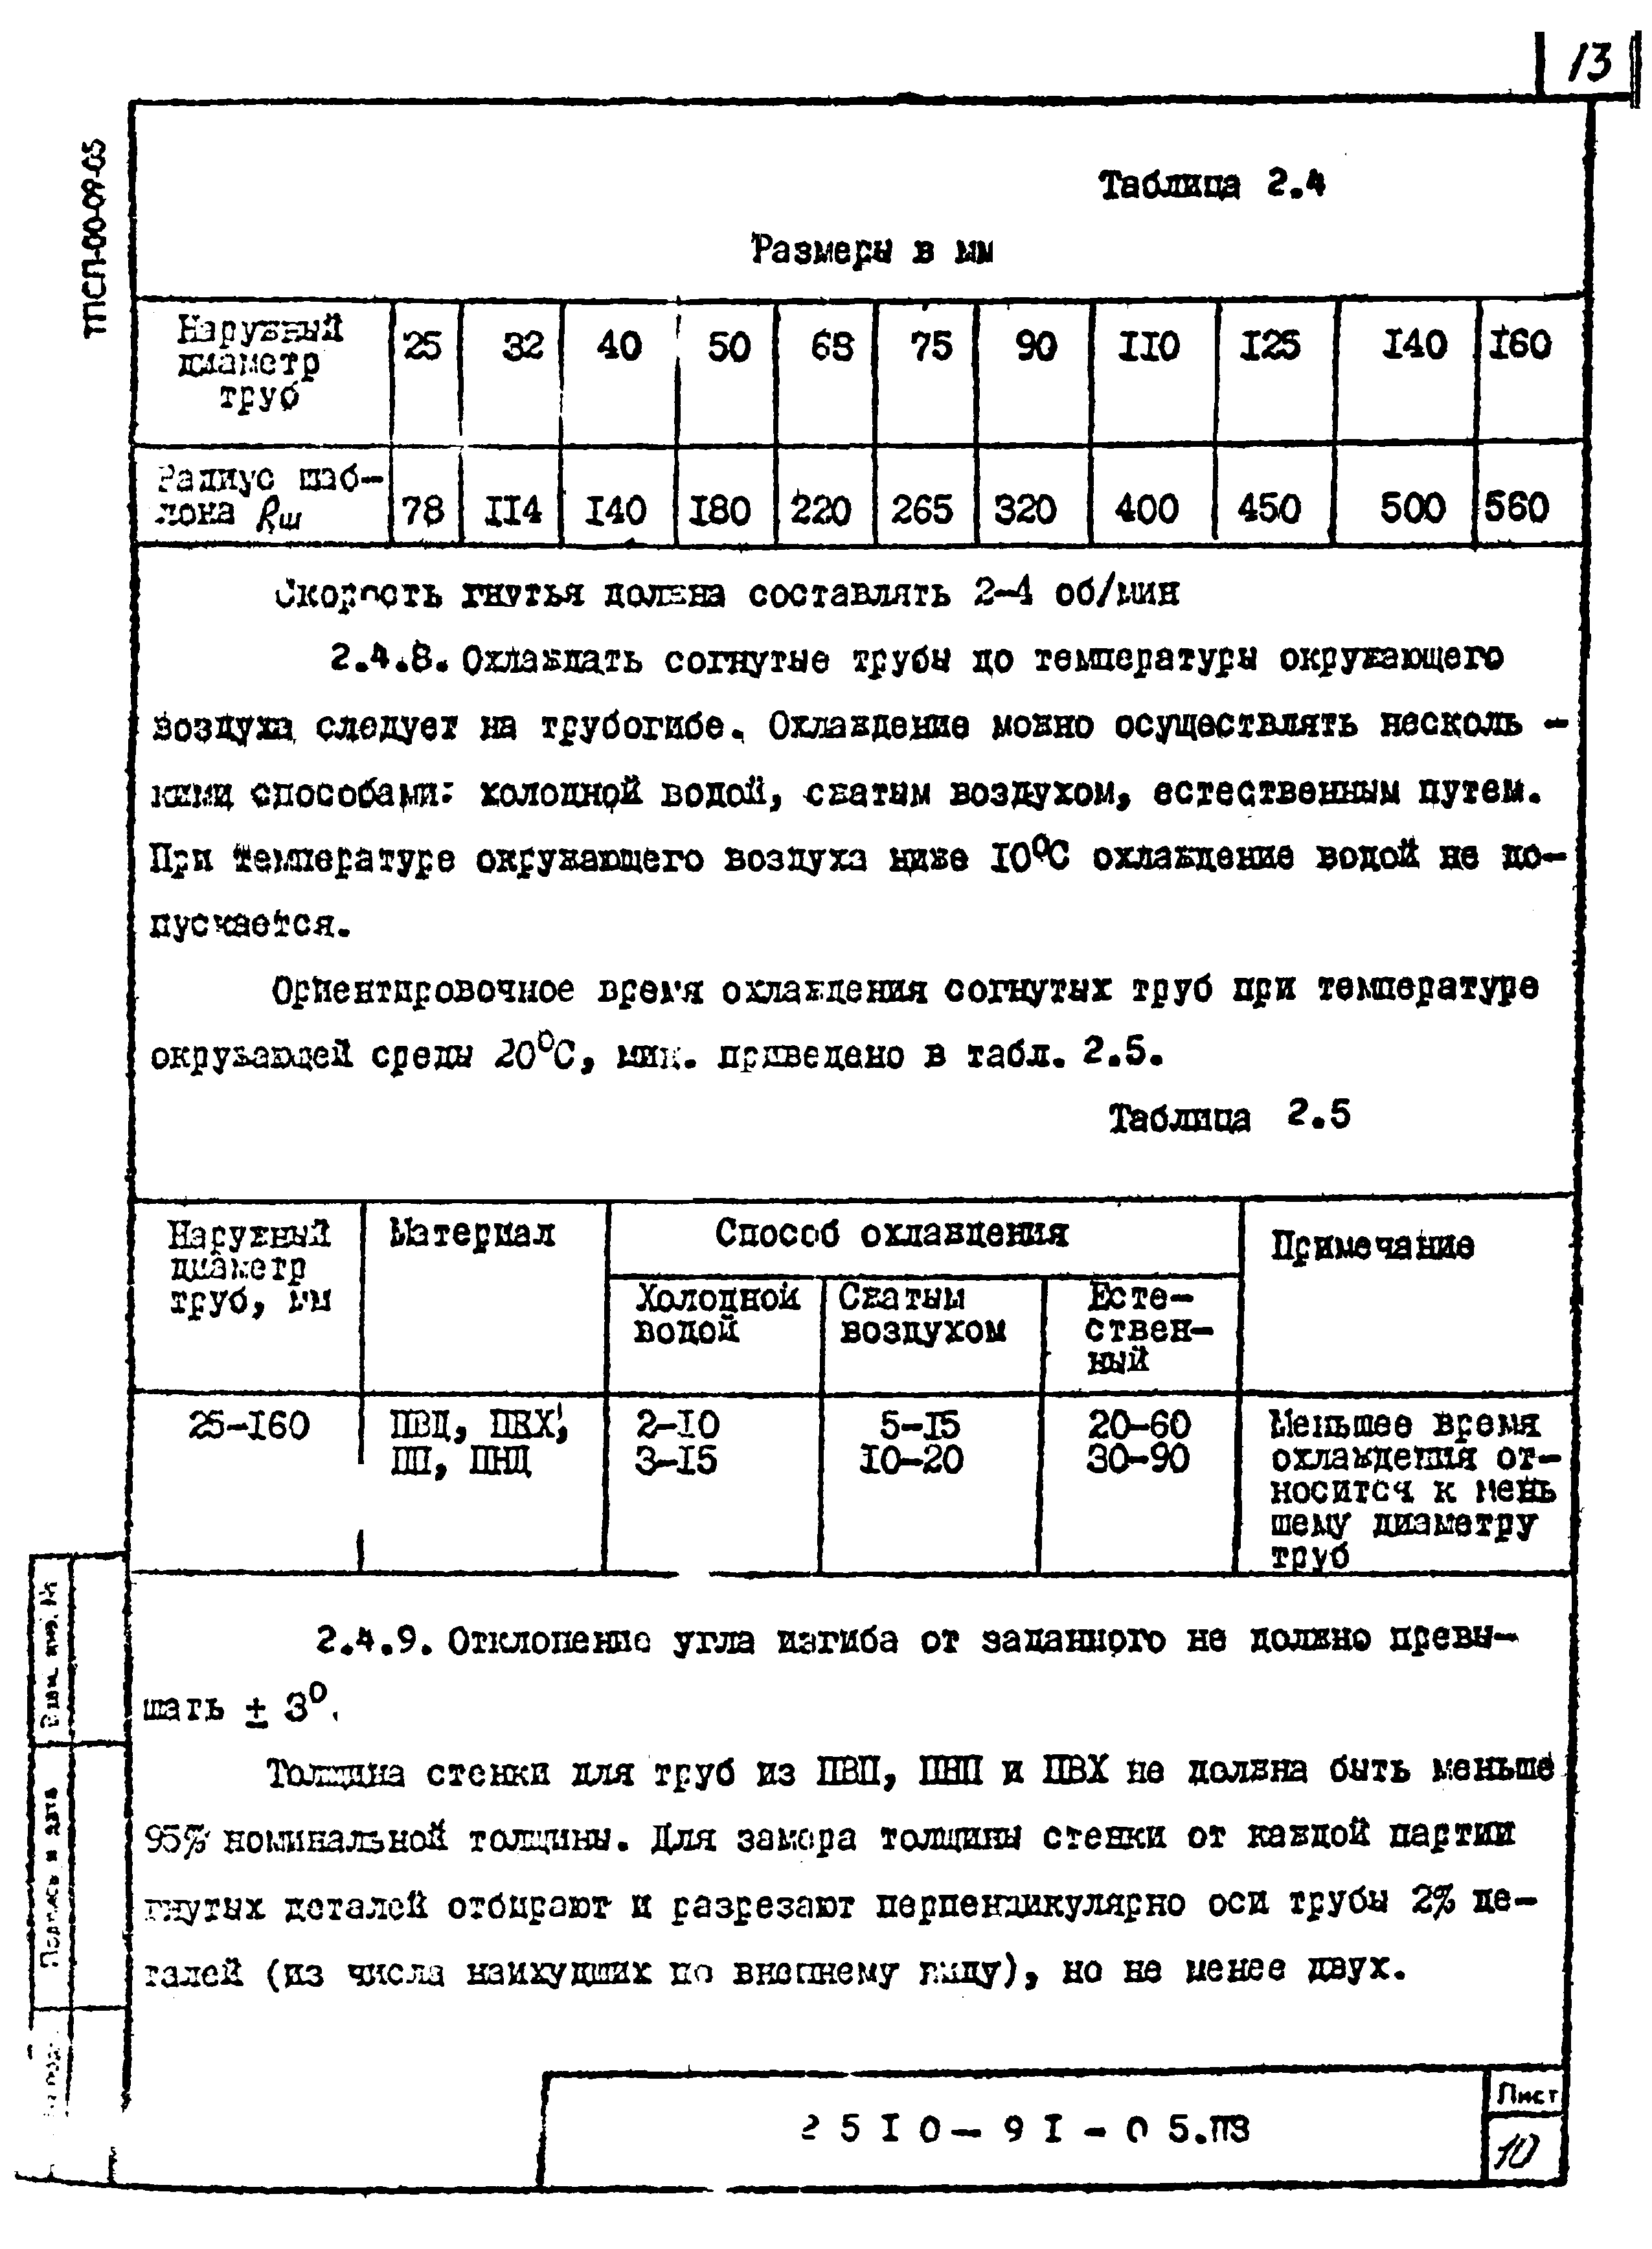 Шифр 2510-91